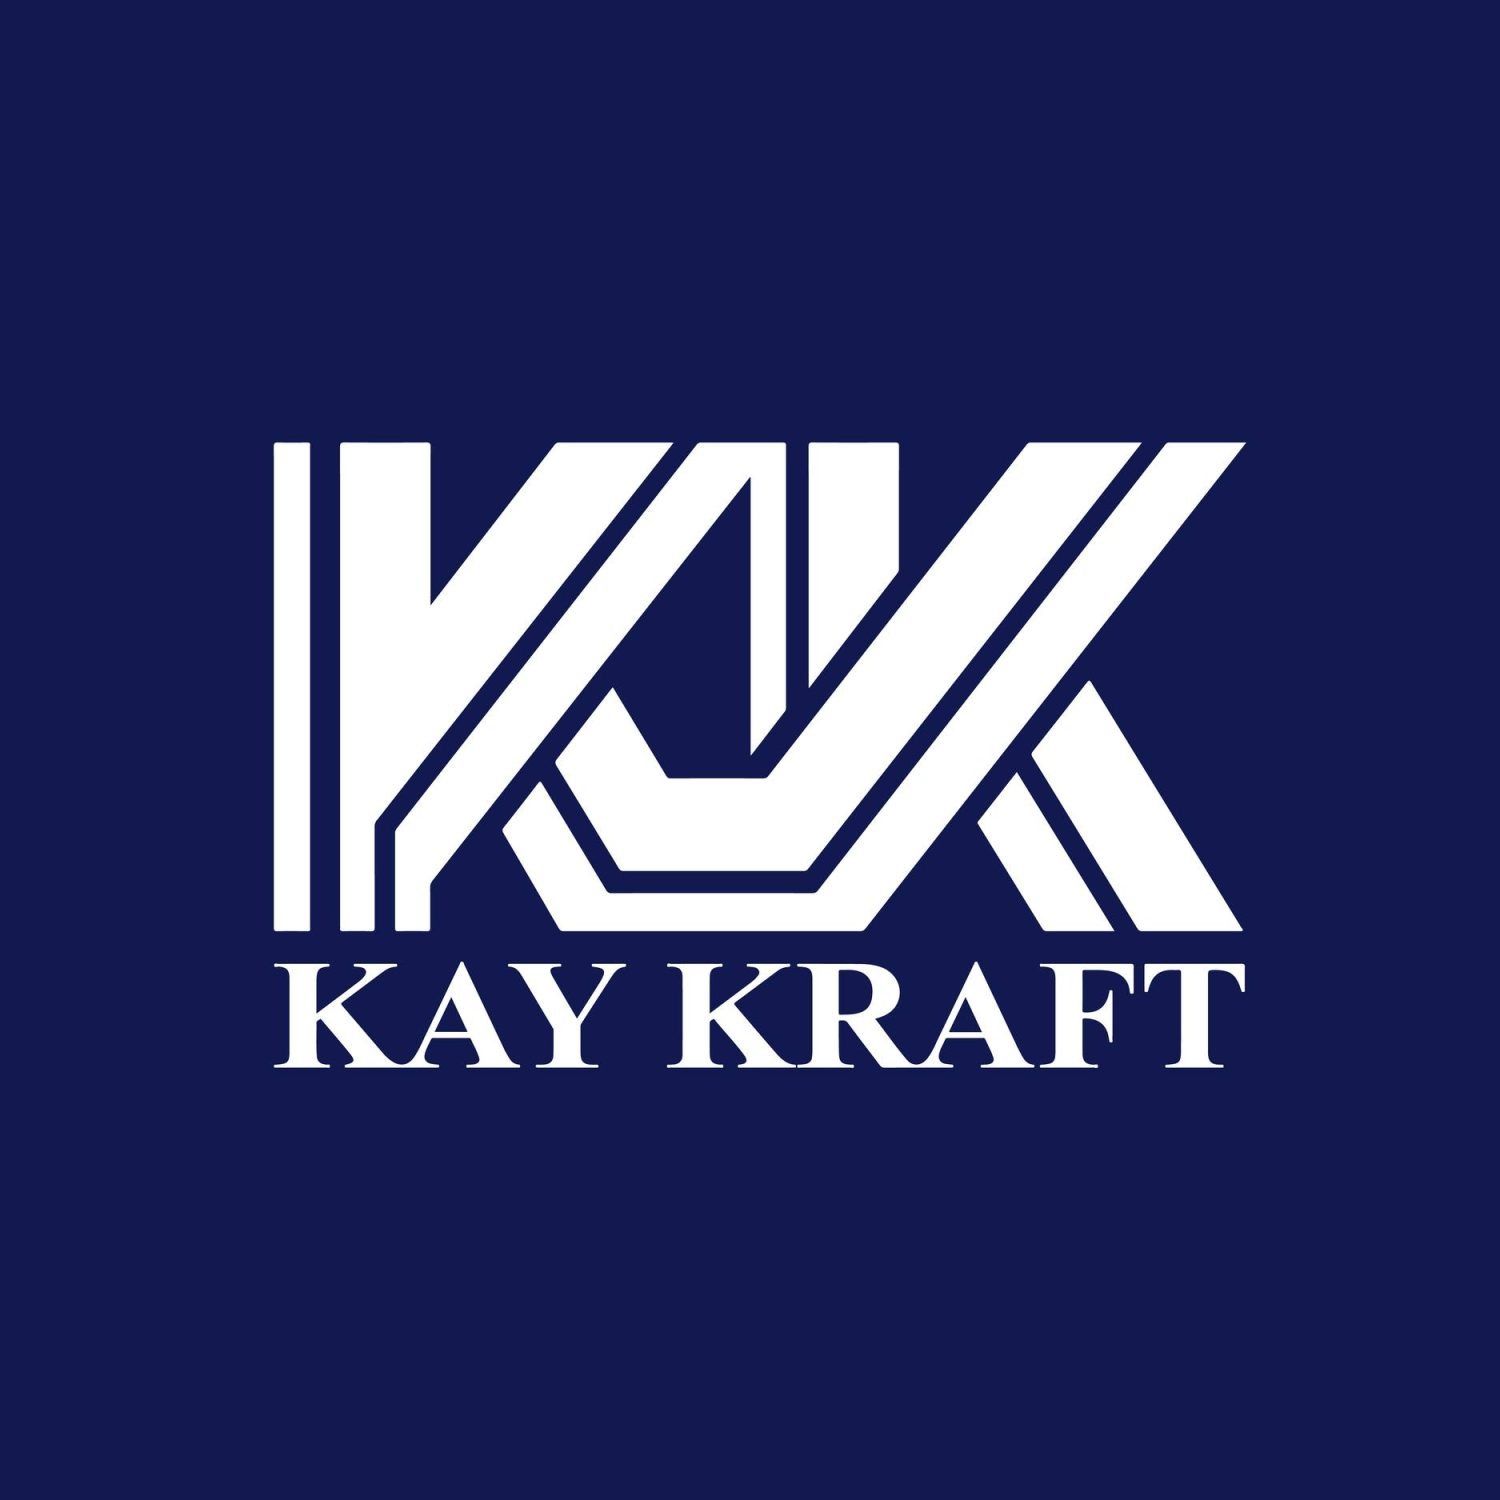 Kay Kraft